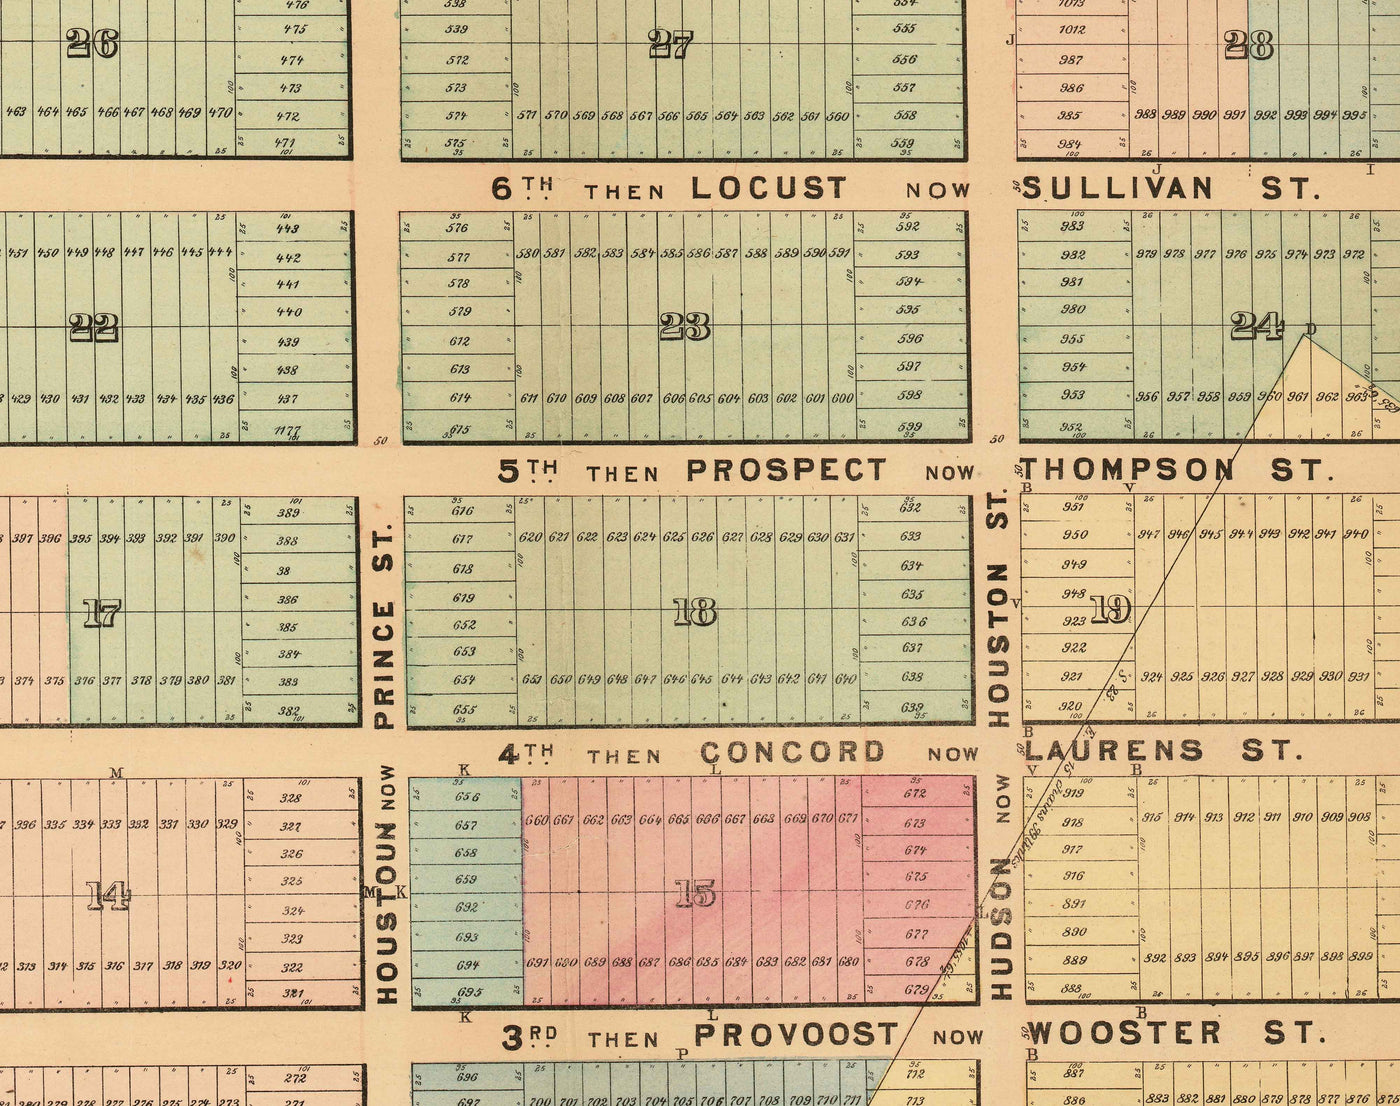 Alte Karte von SoHo, NYC, 1868 von John Bute Holmes - Manhattan Farmland Survey, Broadway, Bleeker, Houston St